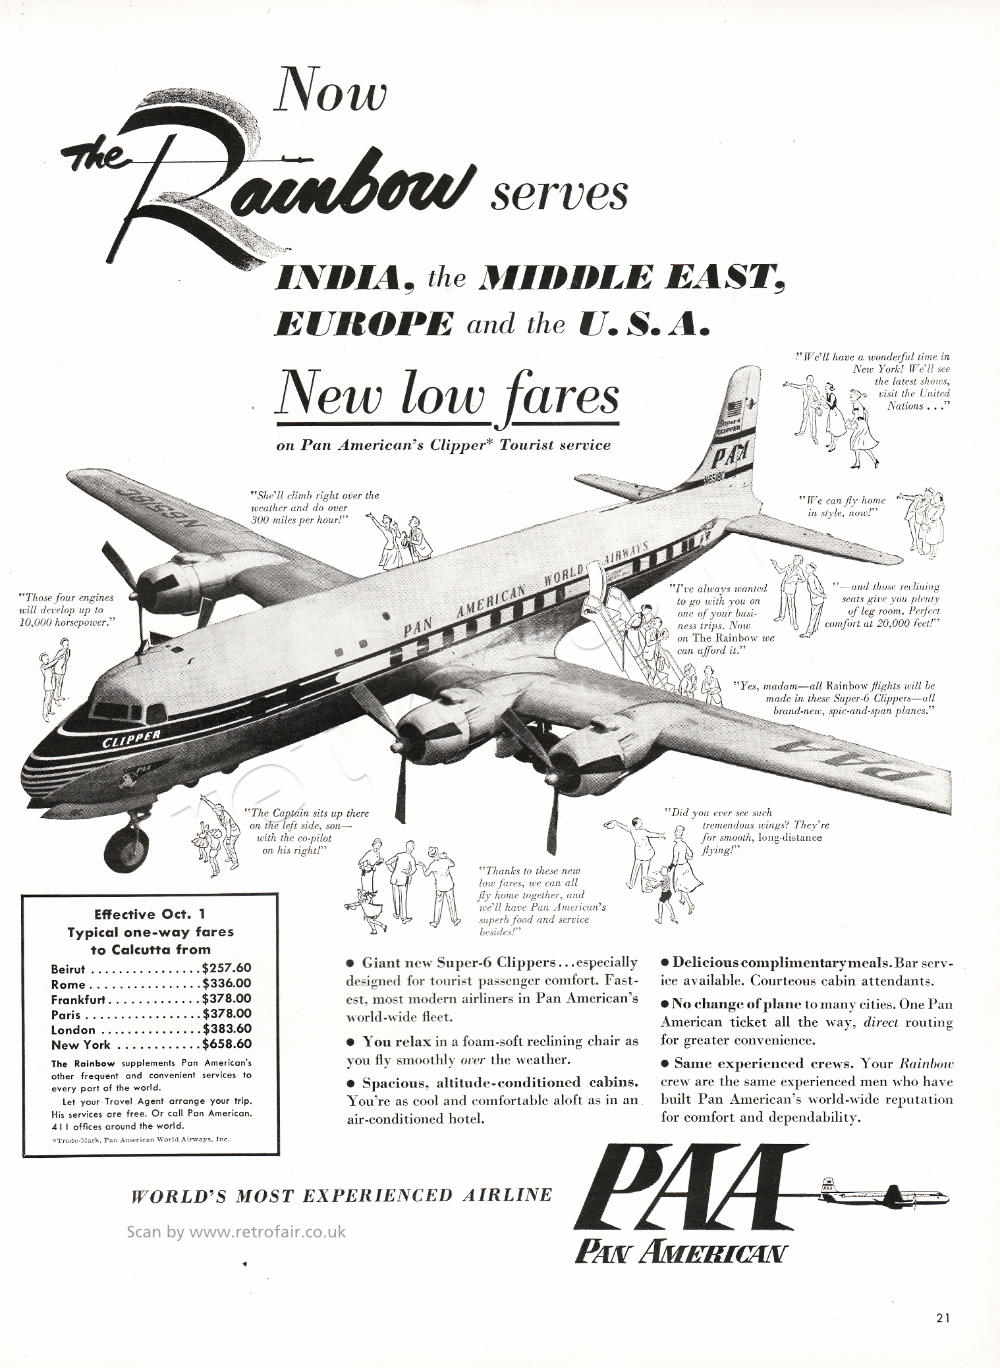 Pan American Airlines vintage ad